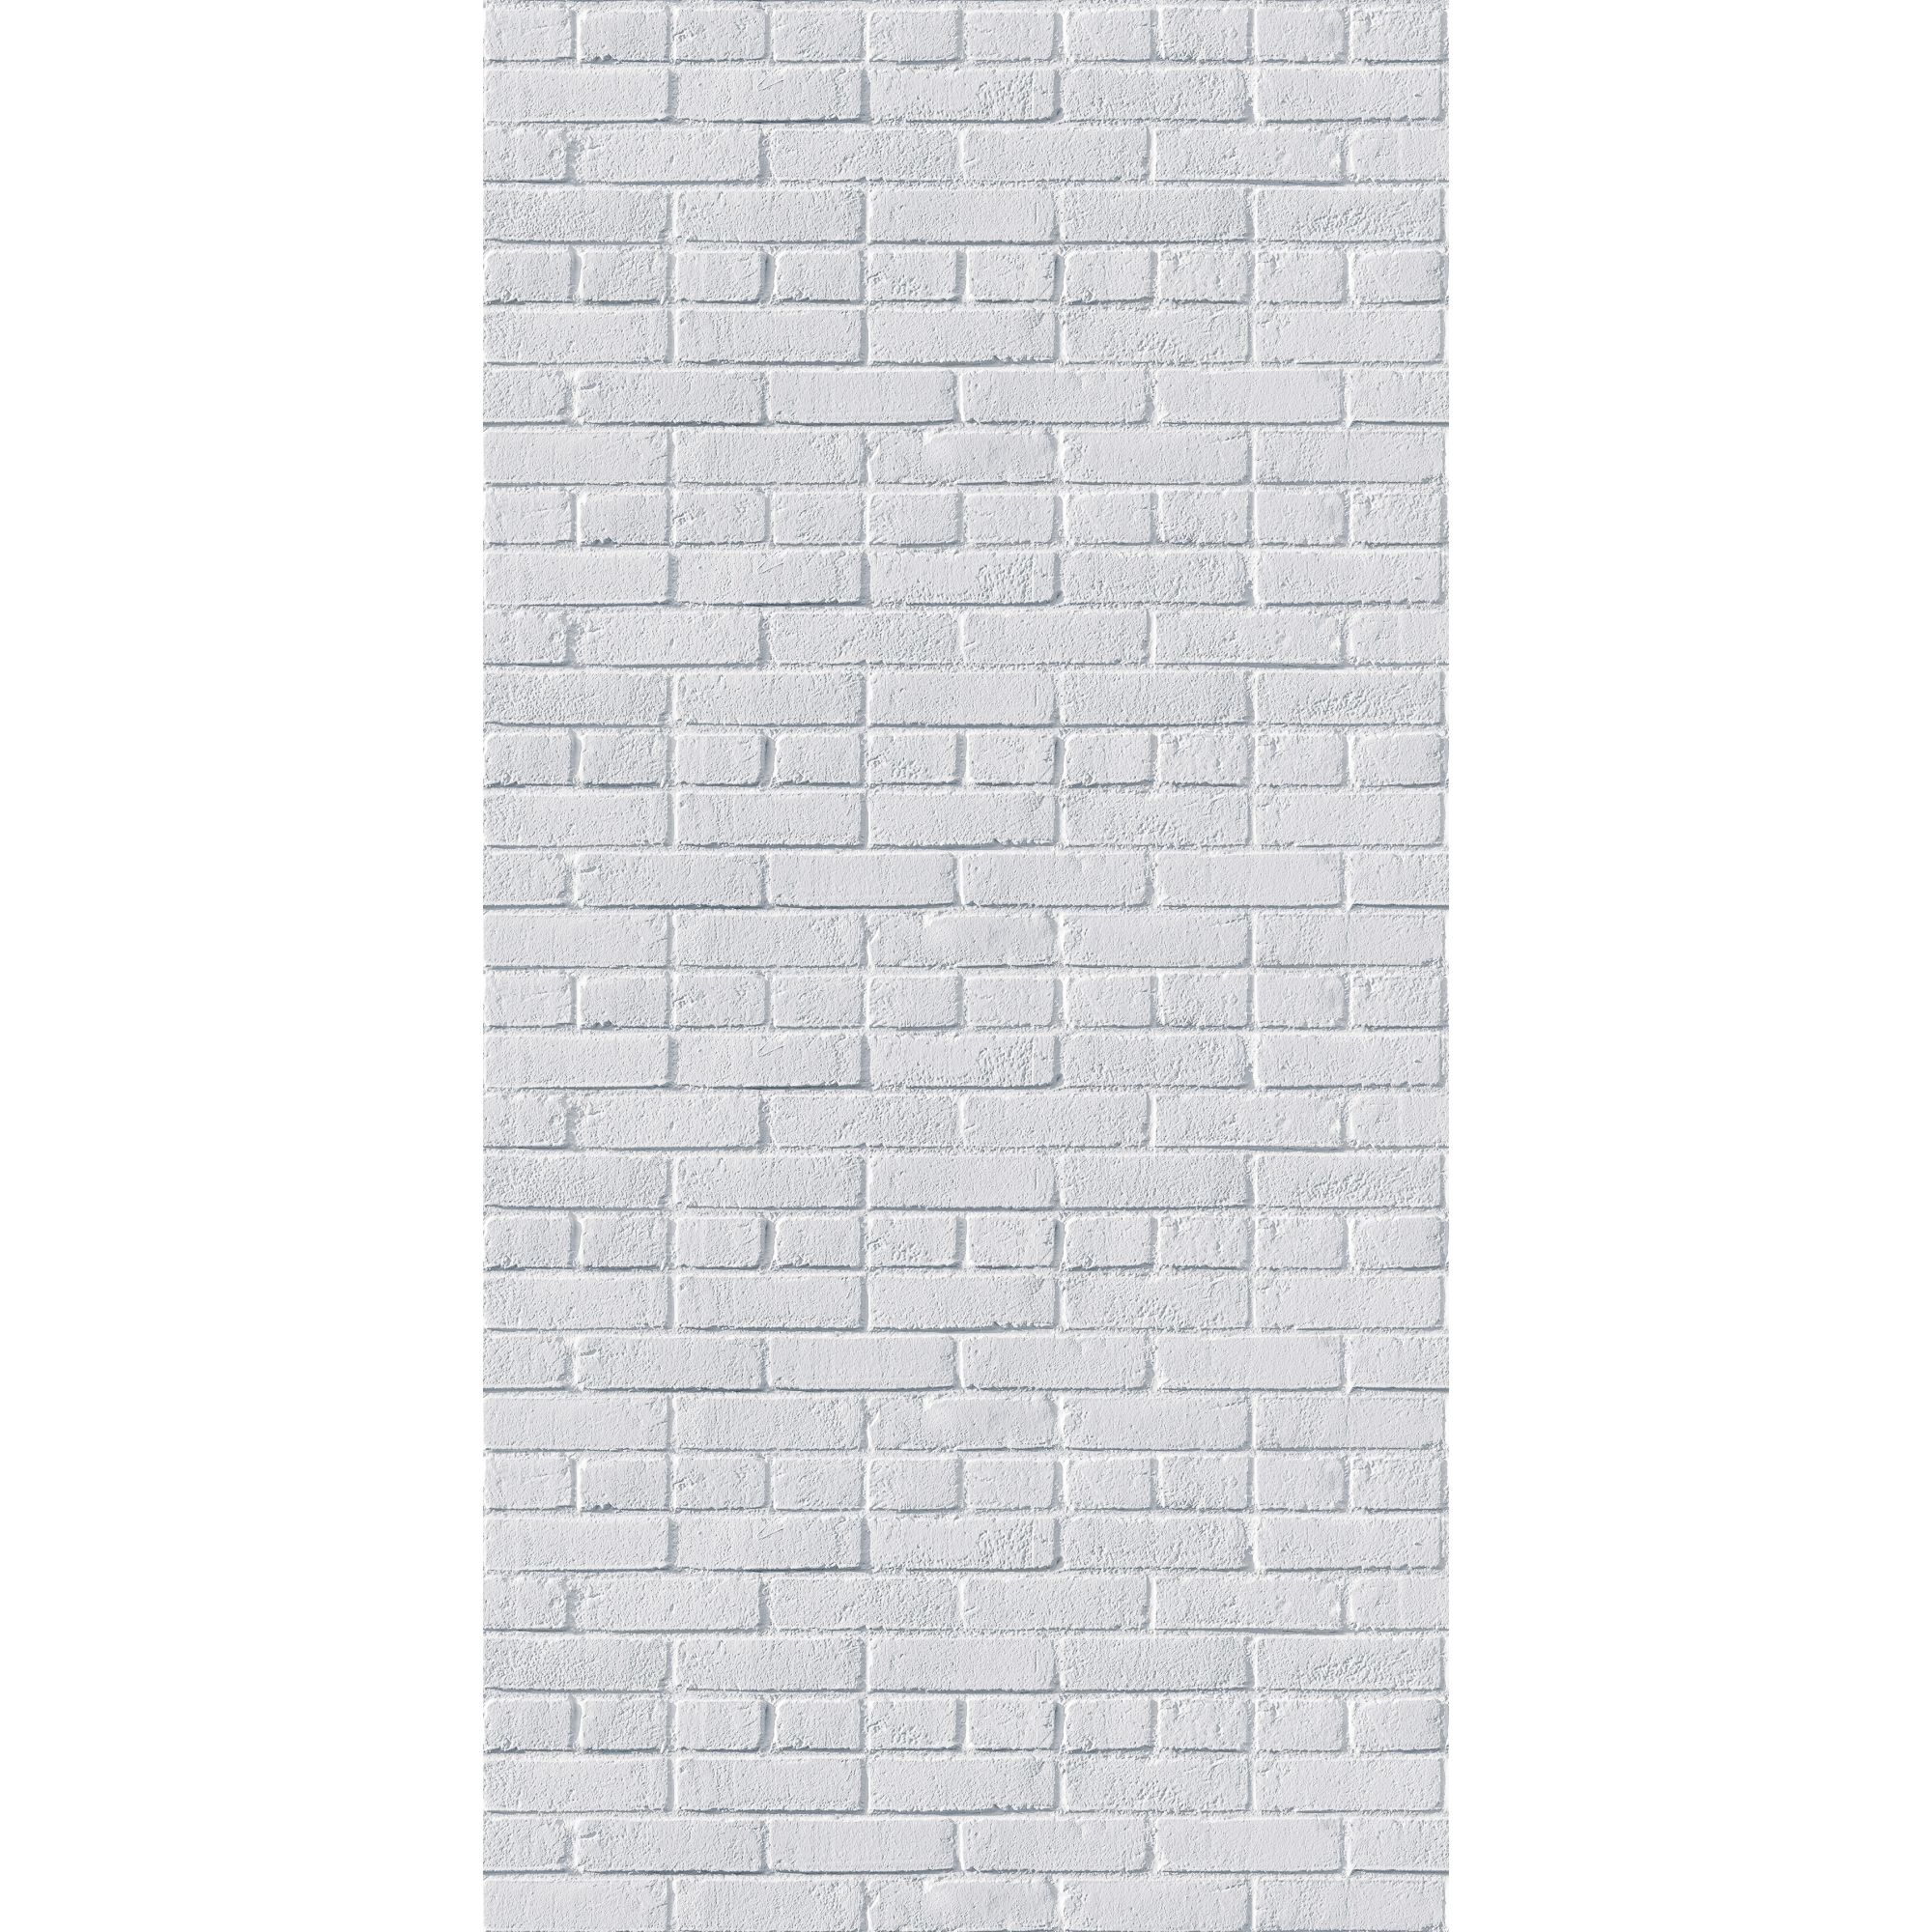 Стеновая панель МДФ Акватон 3D с тиснением и цифровой печатью Кирпич "Премиум" КП-20  2440х1220 мм